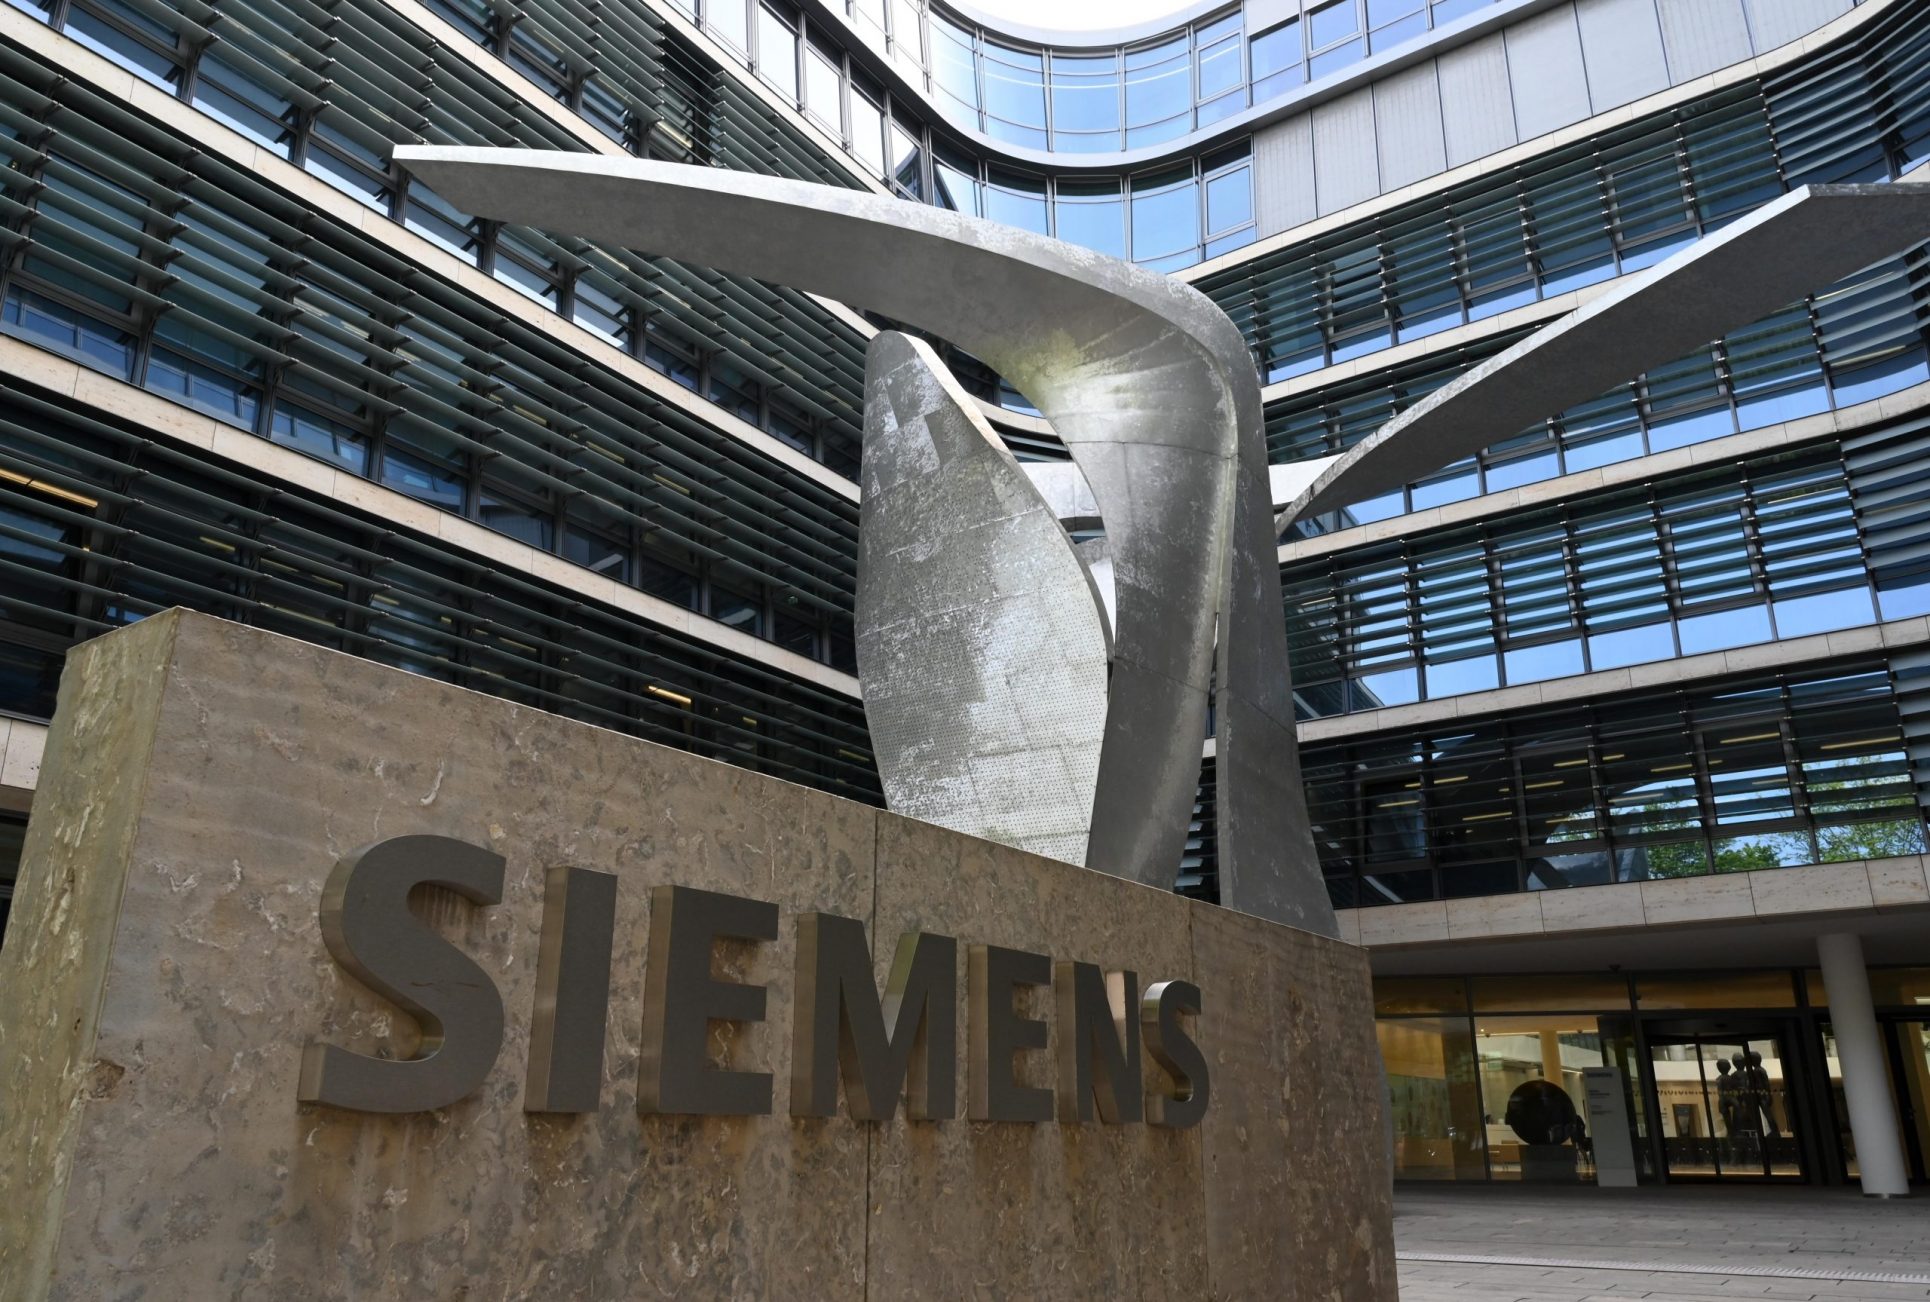 Empresa alemana Siemens cerrará parcialmente sus operaciones en Costa Rica